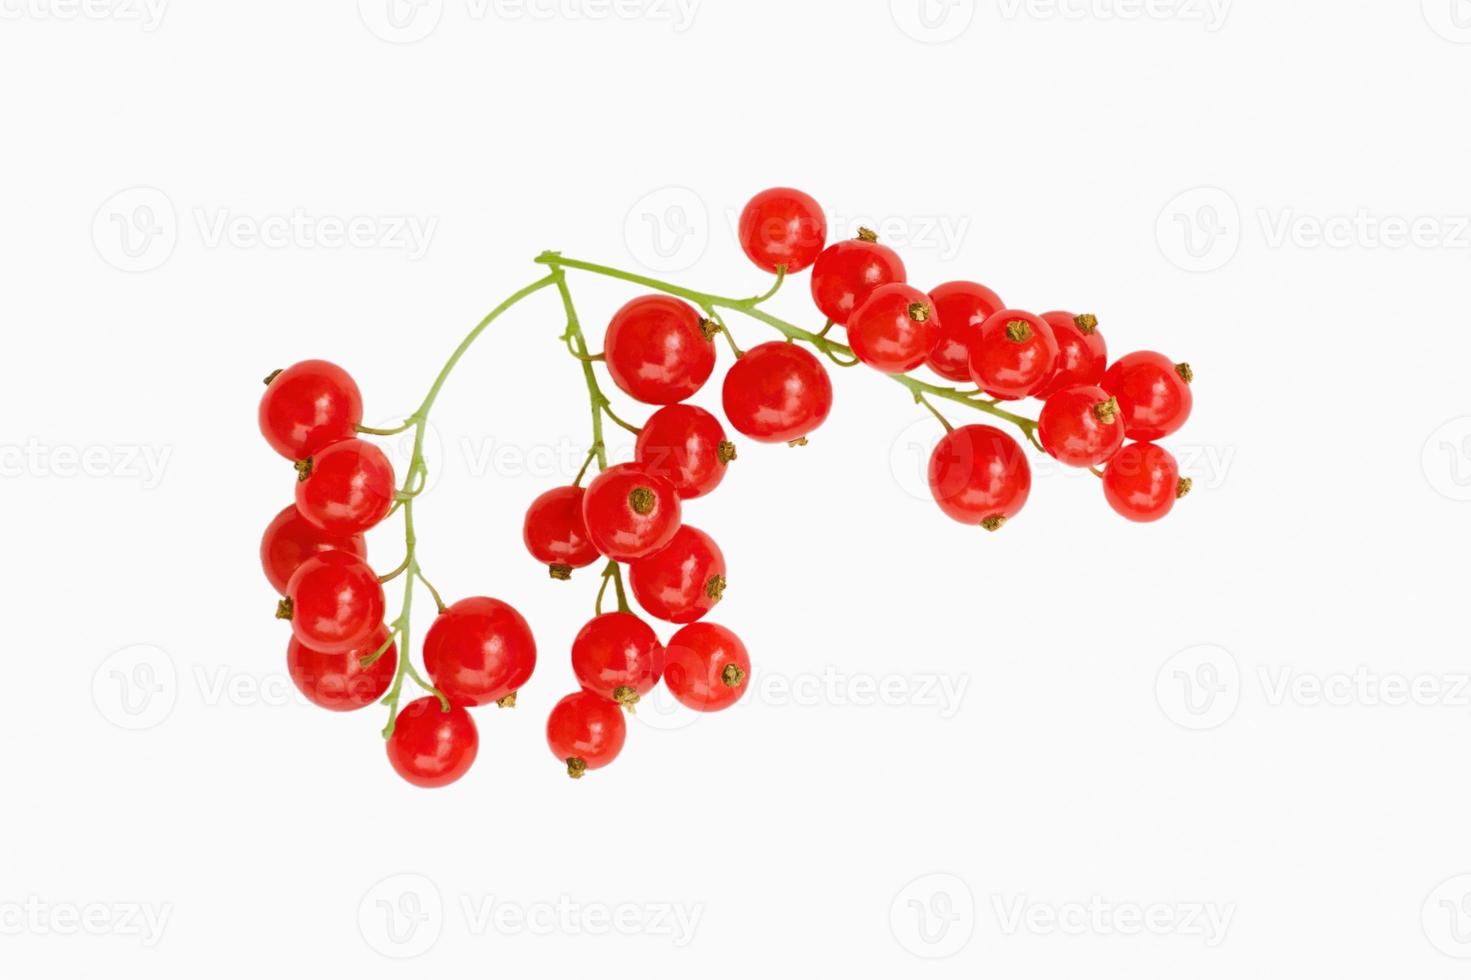 frutos de groselha vermelha isolados no fundo branco foto